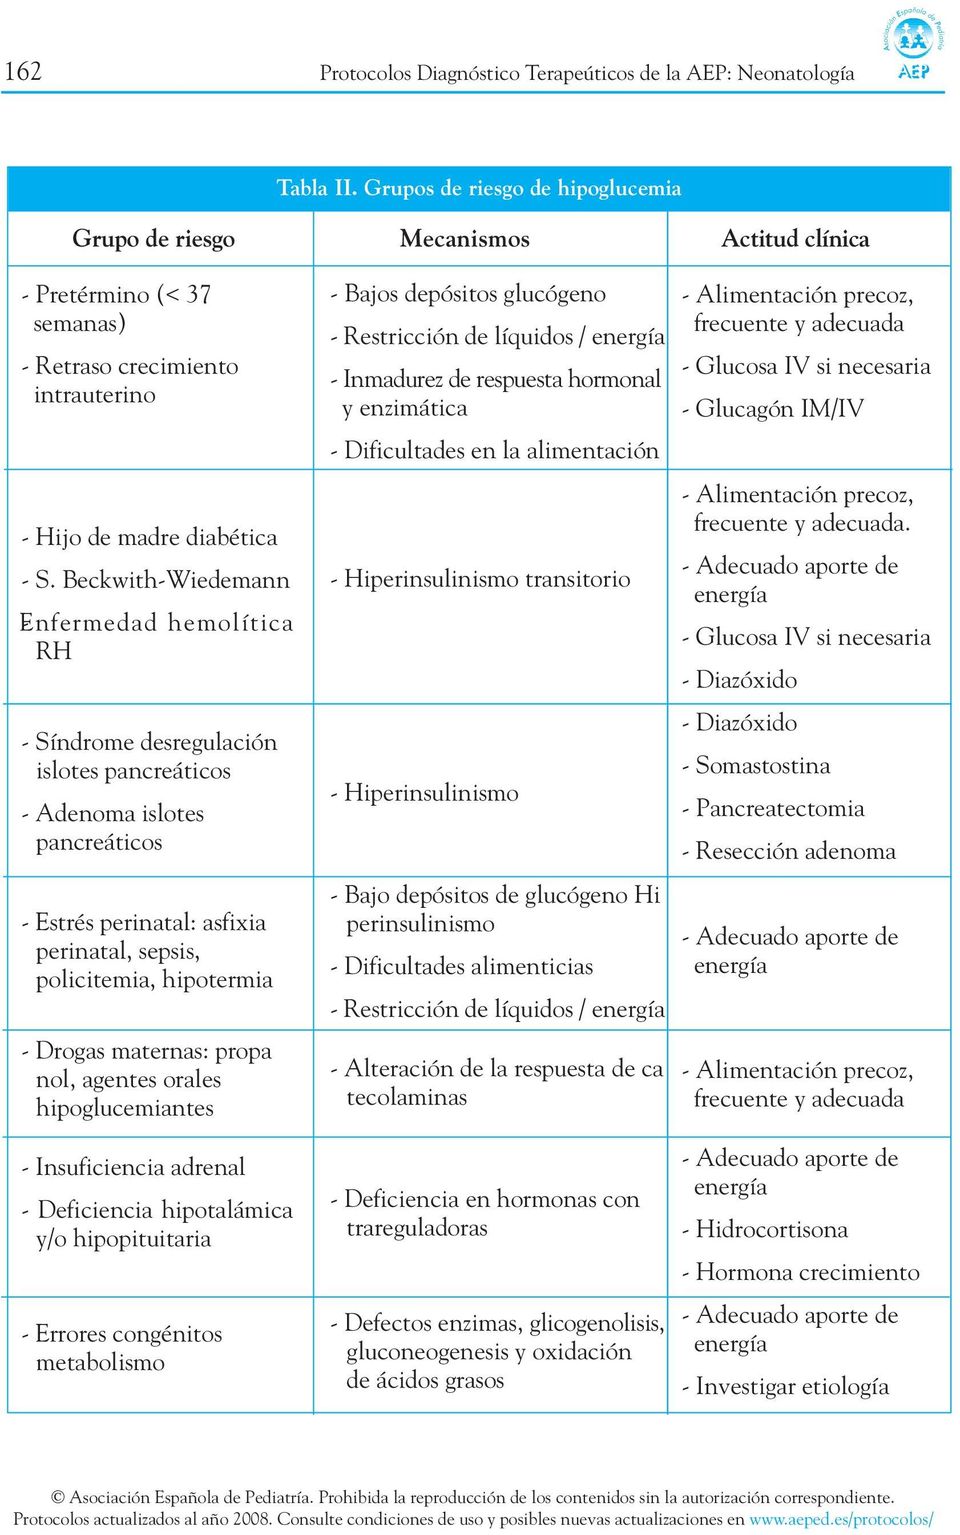 Beckwith-Wiedemann -Enfermedad hemolítica RH - Síndrome desregulación islotes pancreáticos - Adenoma islotes pancreáticos - Estrés perinatal: asfixia perinatal, sepsis, policitemia, hipotermia -